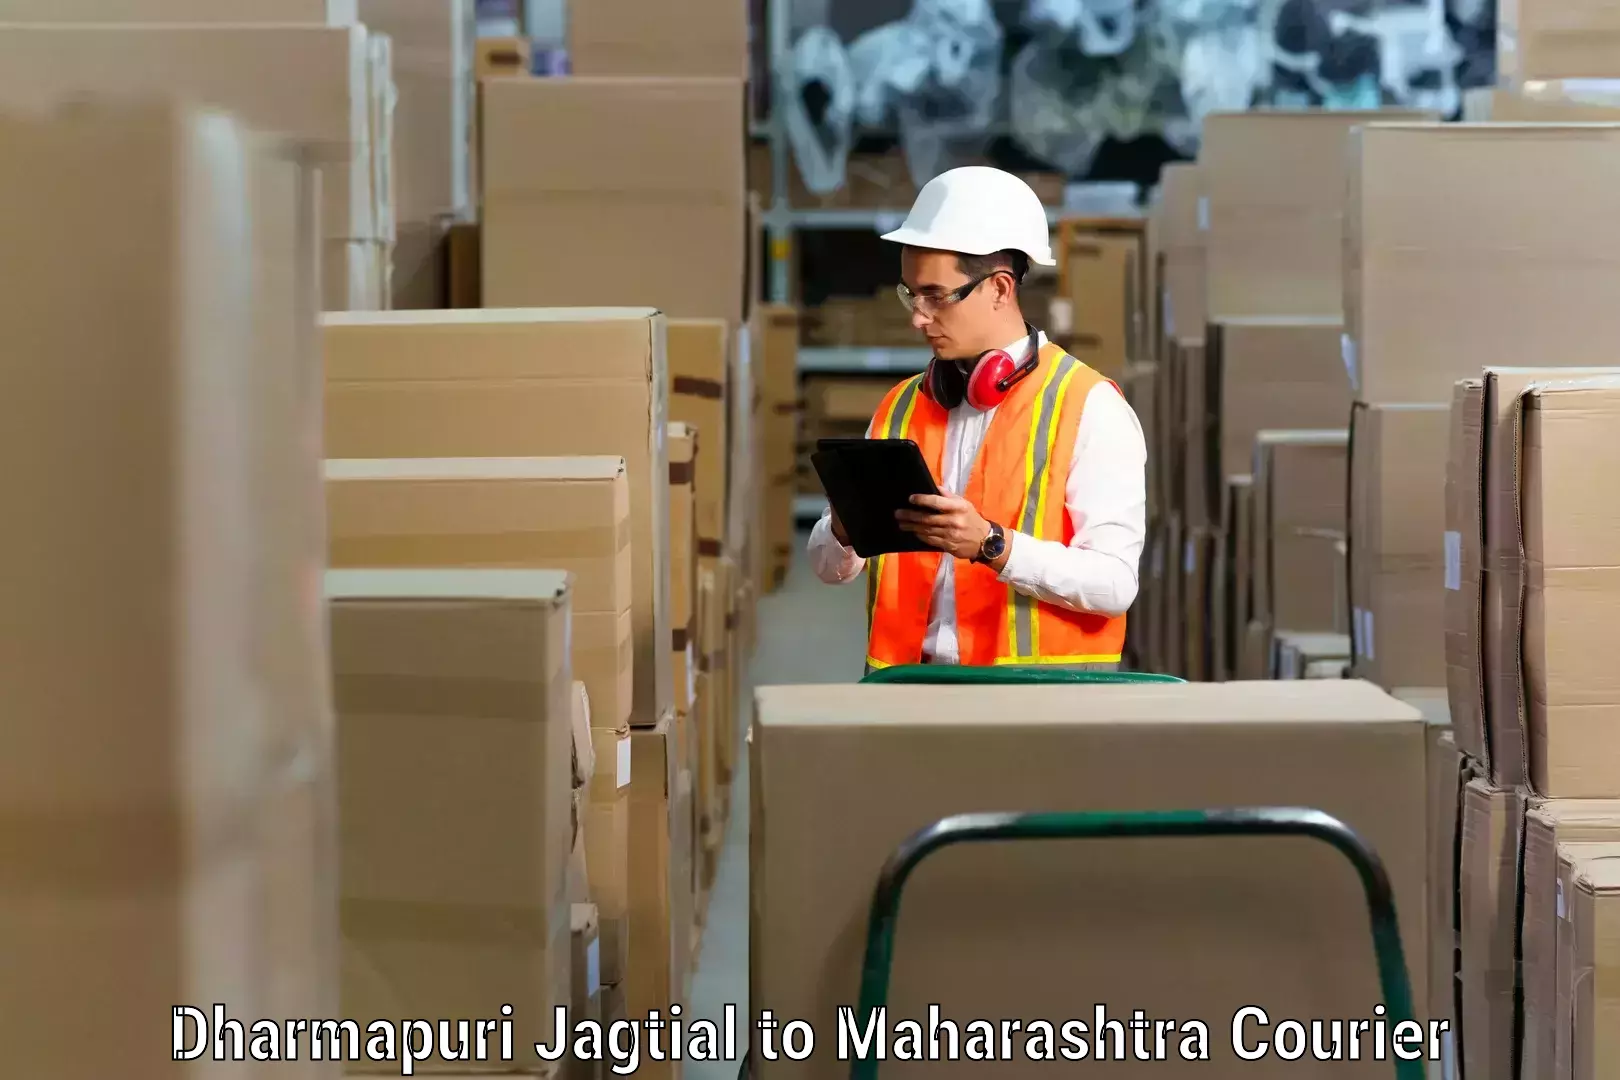 Furniture shipping services Dharmapuri Jagtial to Jalgaon Jamod